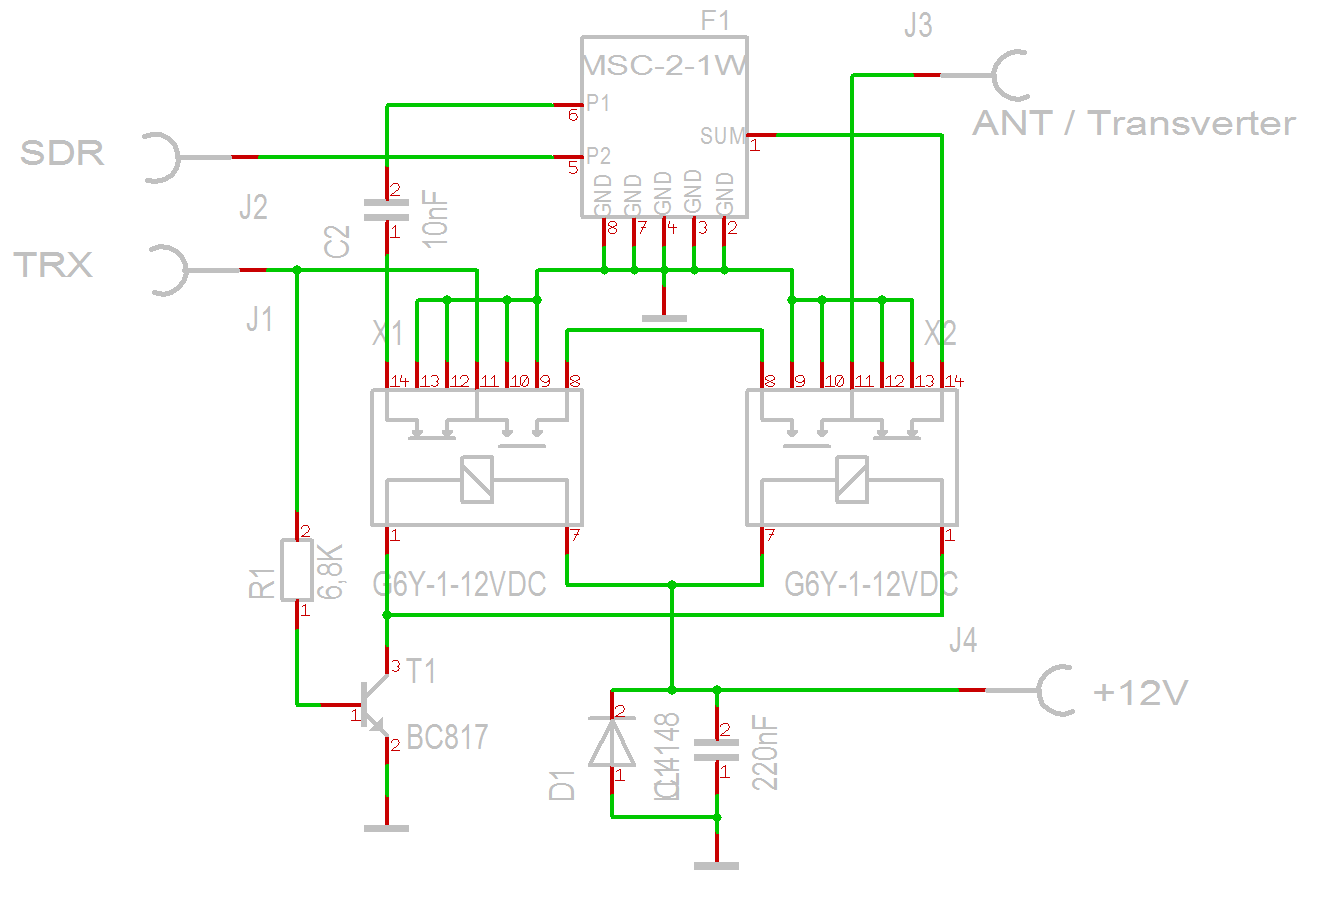 Transceiver - SDR splitter schematic